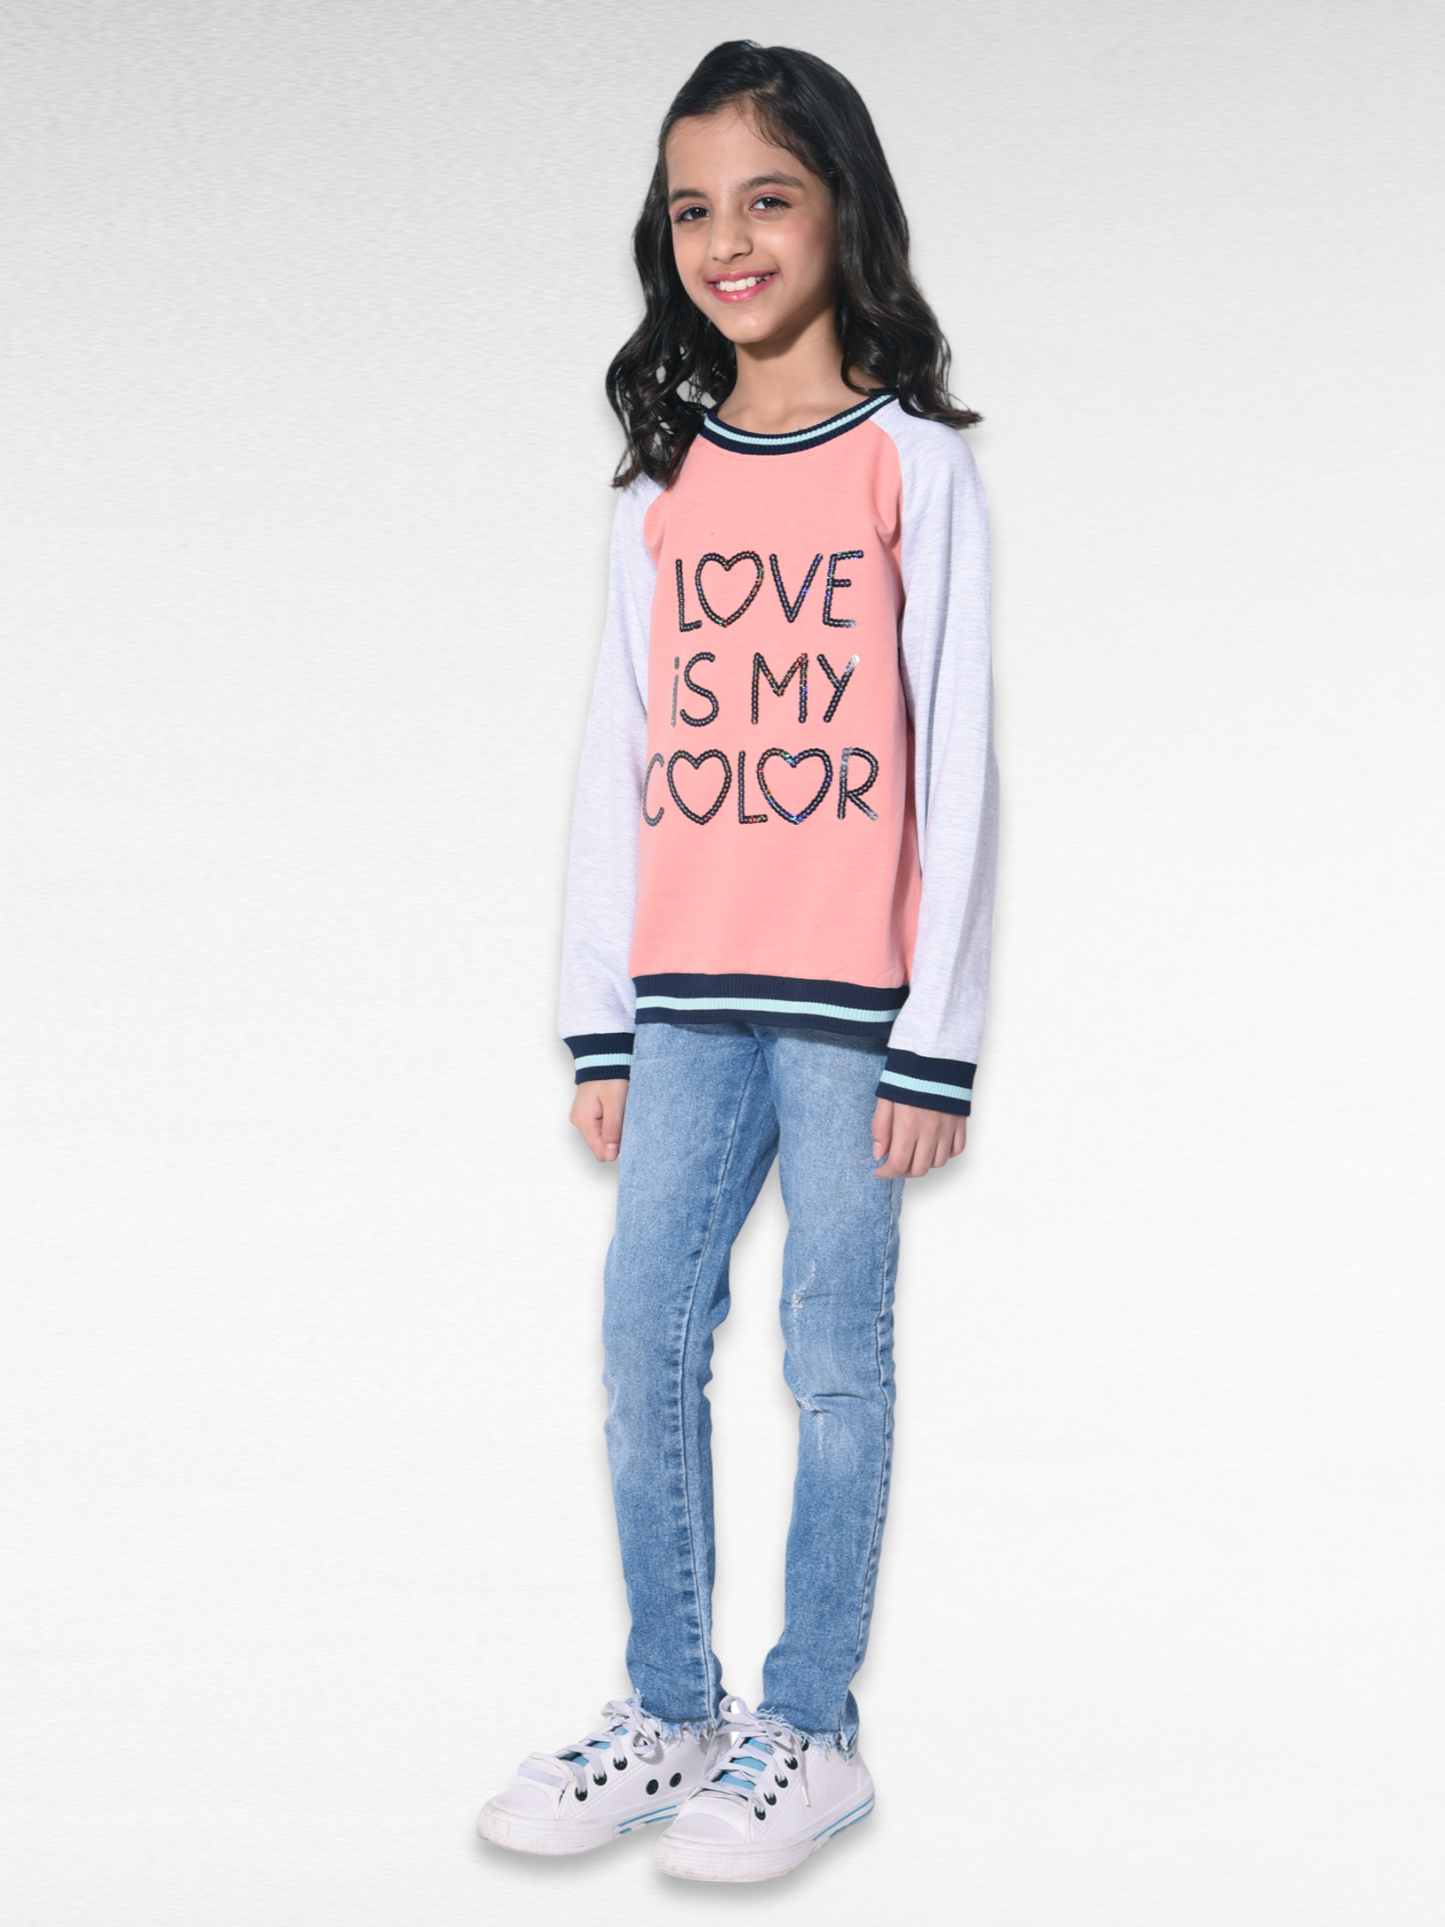 Love is my color girls Sweatshirt